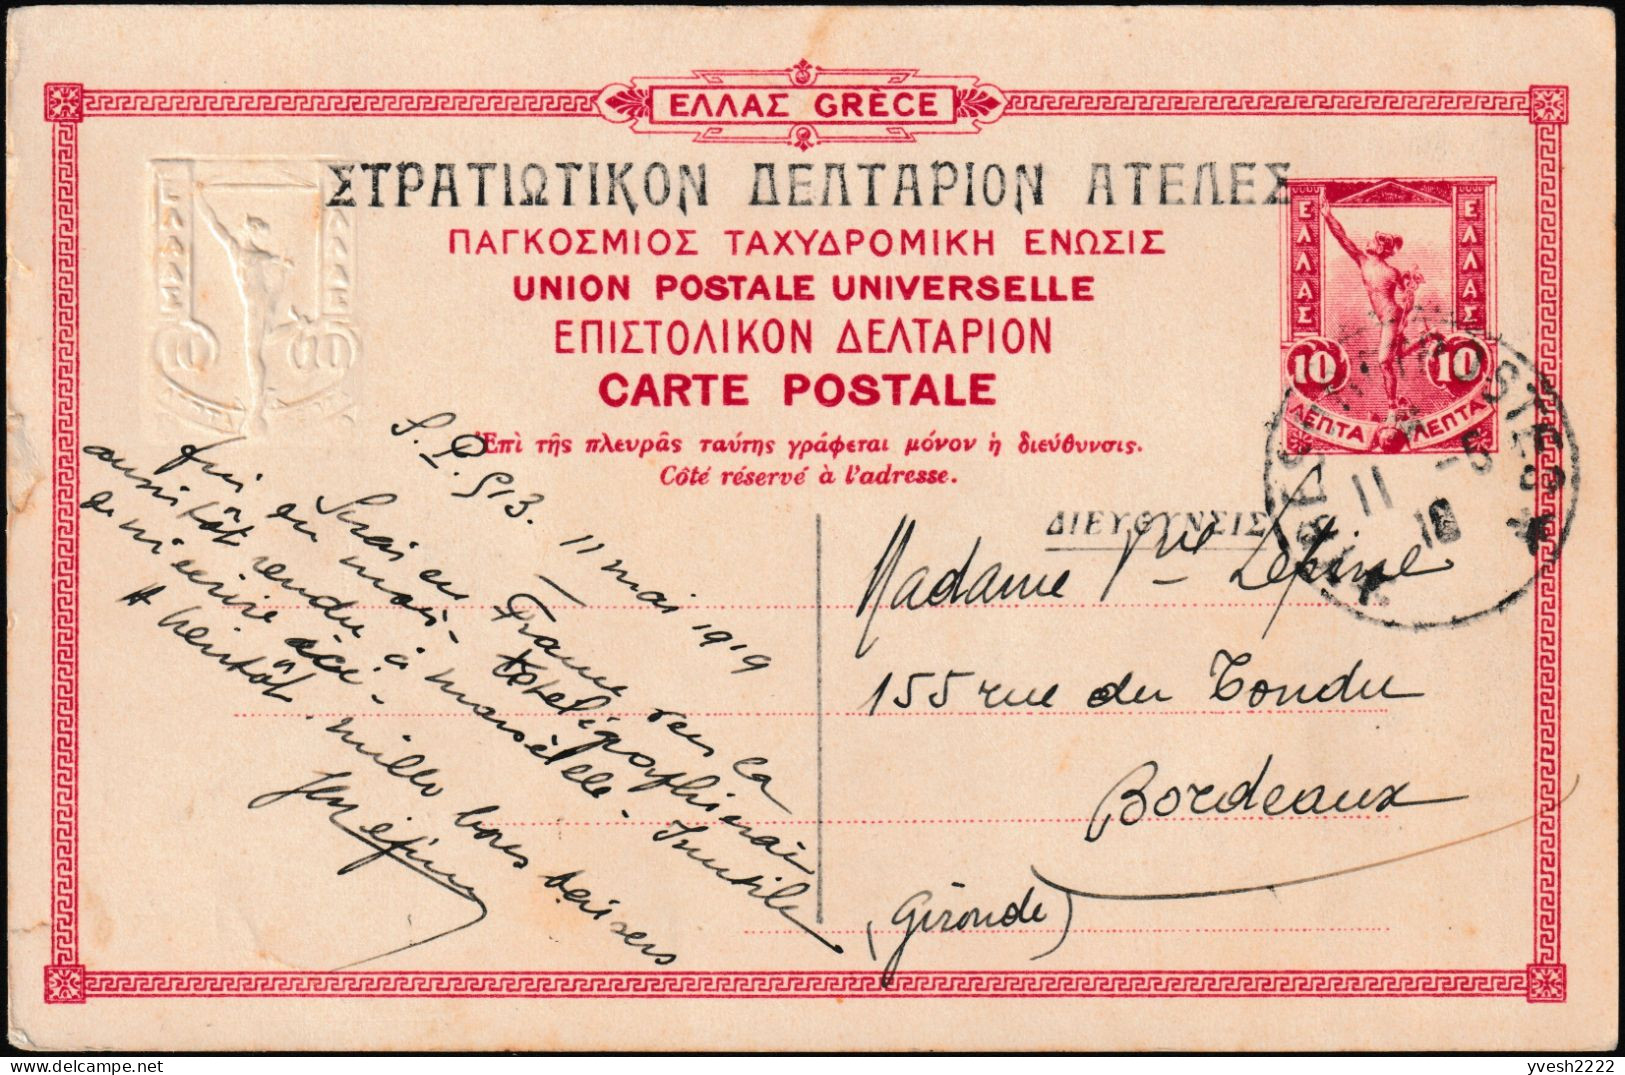 Grèce 1915. 5 cartes postales, entiers officiels. Athènes, statues archaïques : Minerve ou Athena, Aphrodite ou Venus